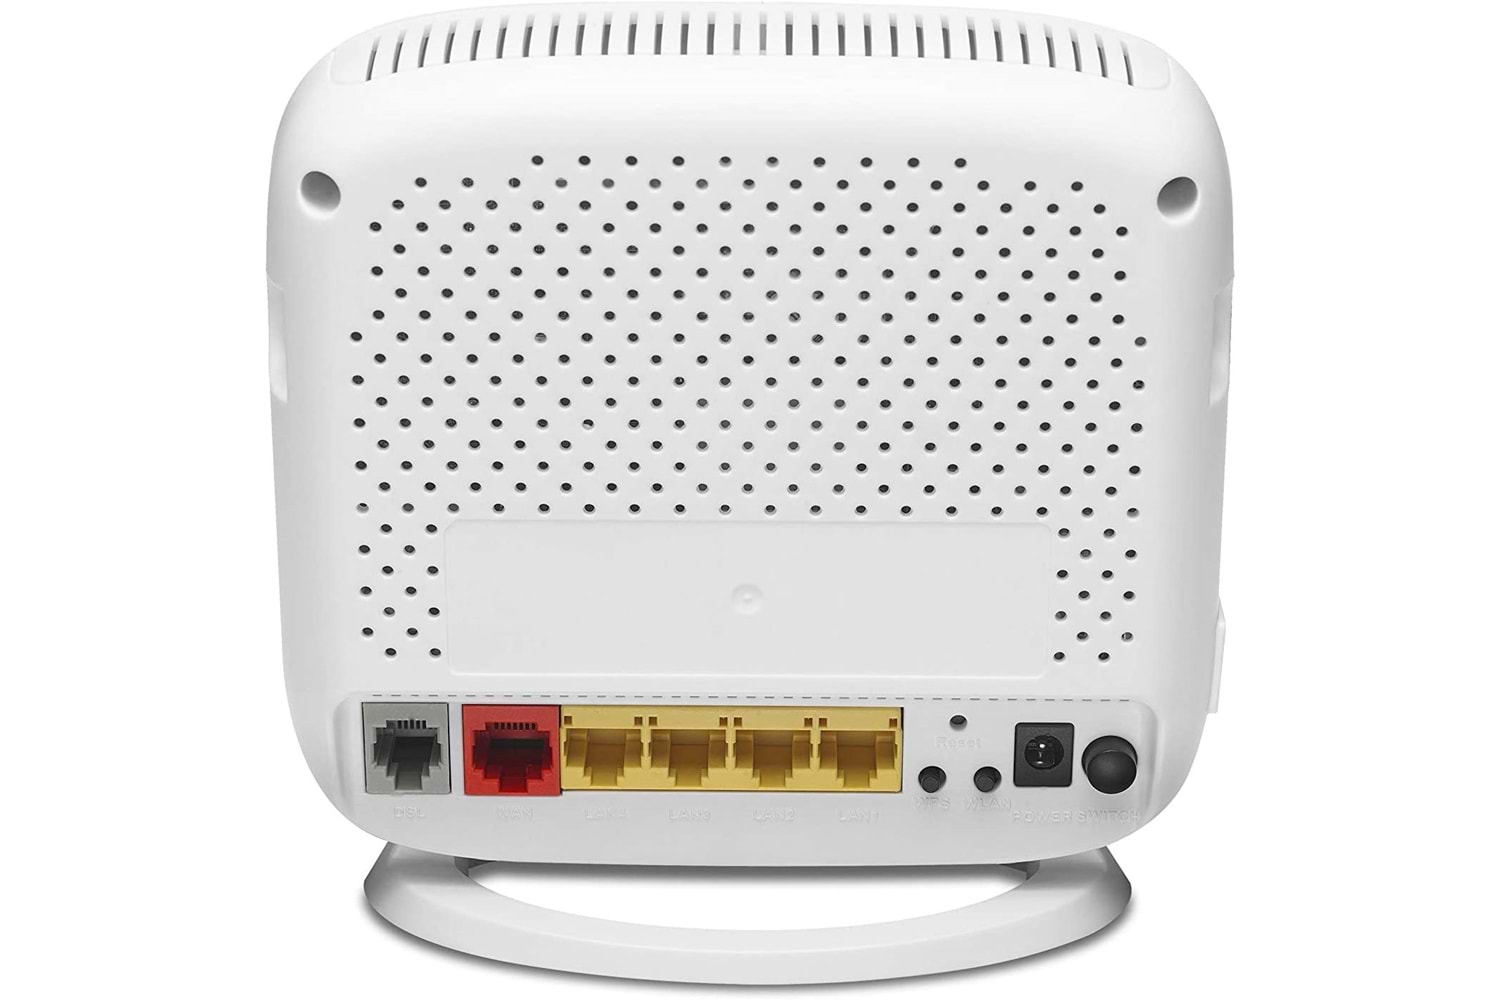 Cnet CVR984RV 4 Port 300 Mbps Wireless N Vdsl2-Adsl2 Modem Router